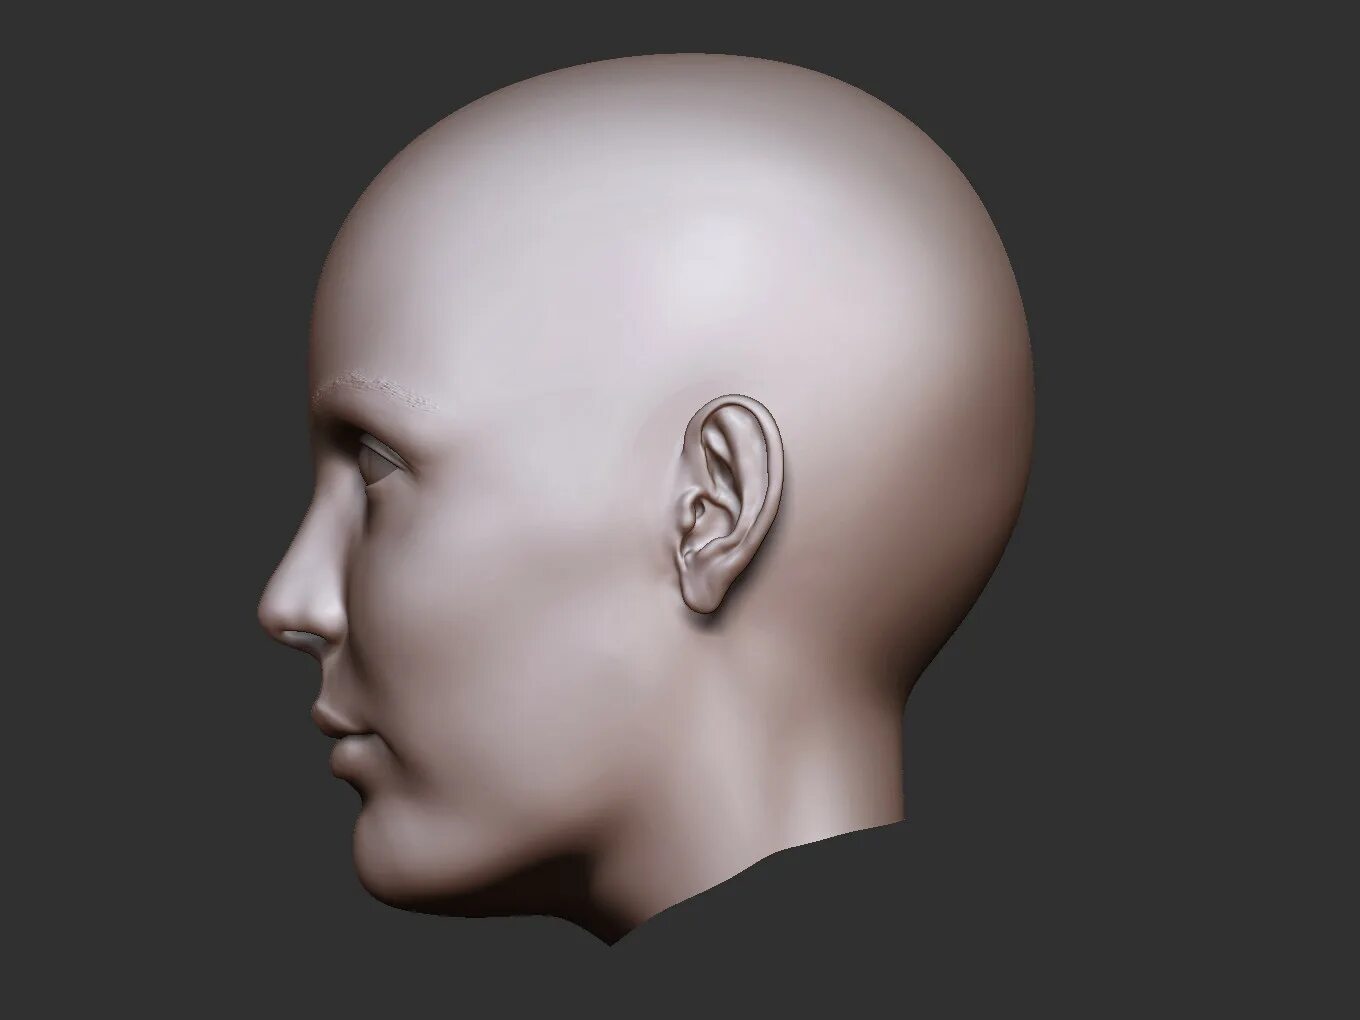 Head add. Голова человека. Человеческая голова в профиль. Голова человека в профиль. Человеческая голова со стороны.